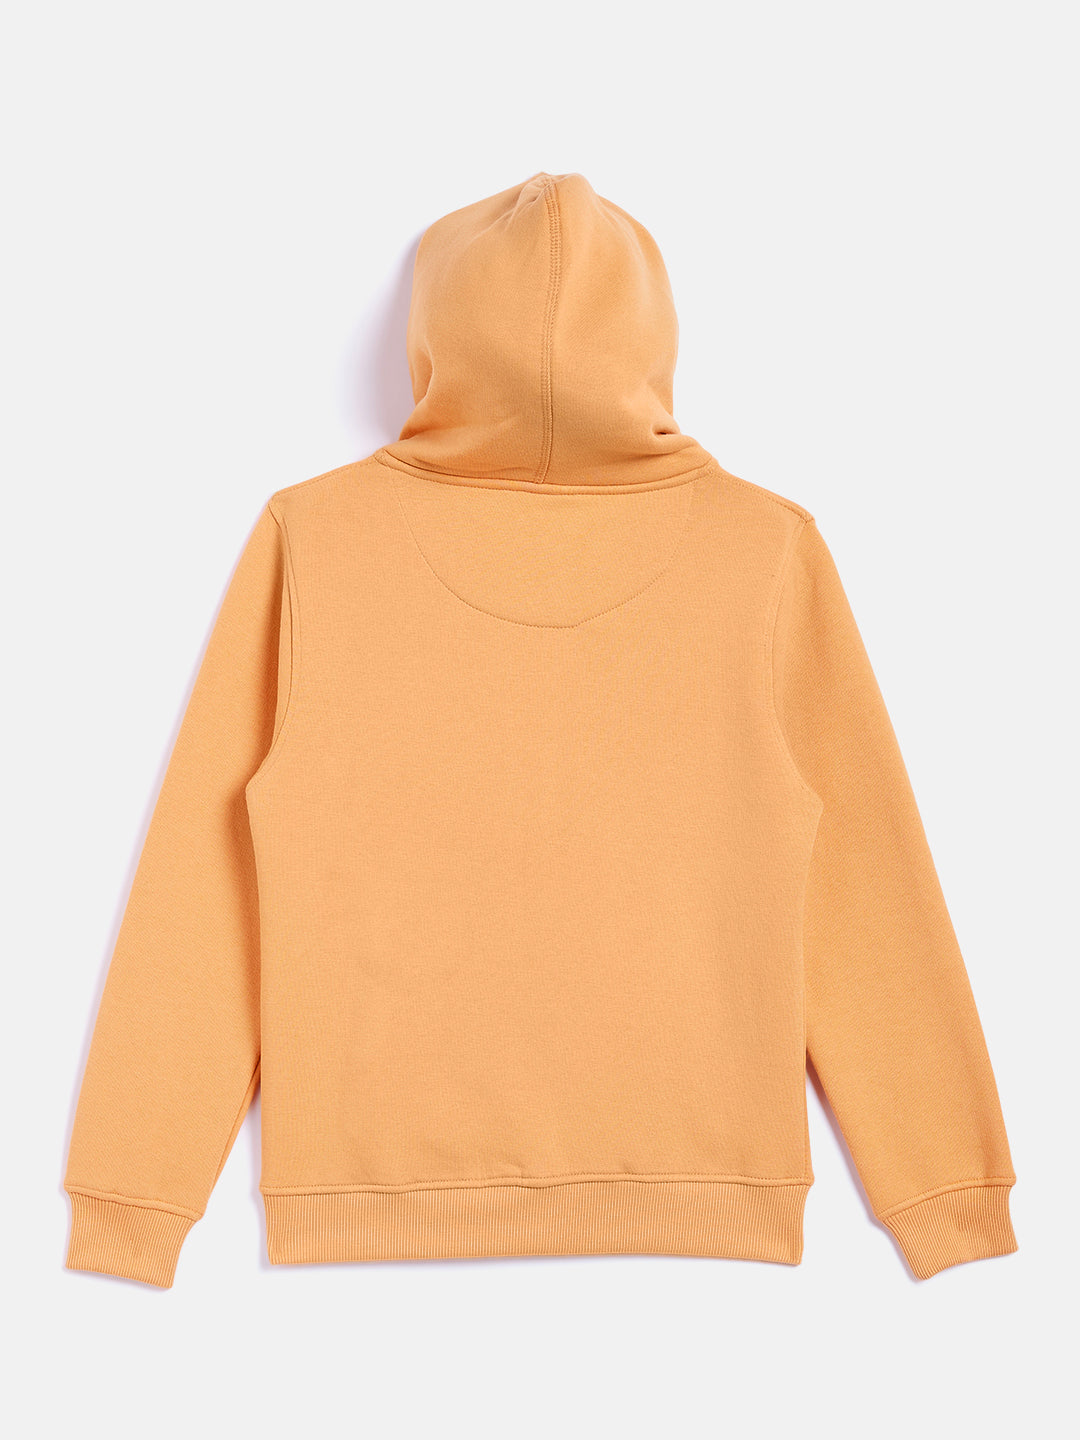 Yellow Hooded Sweatshirt - Girls Sweatshirts